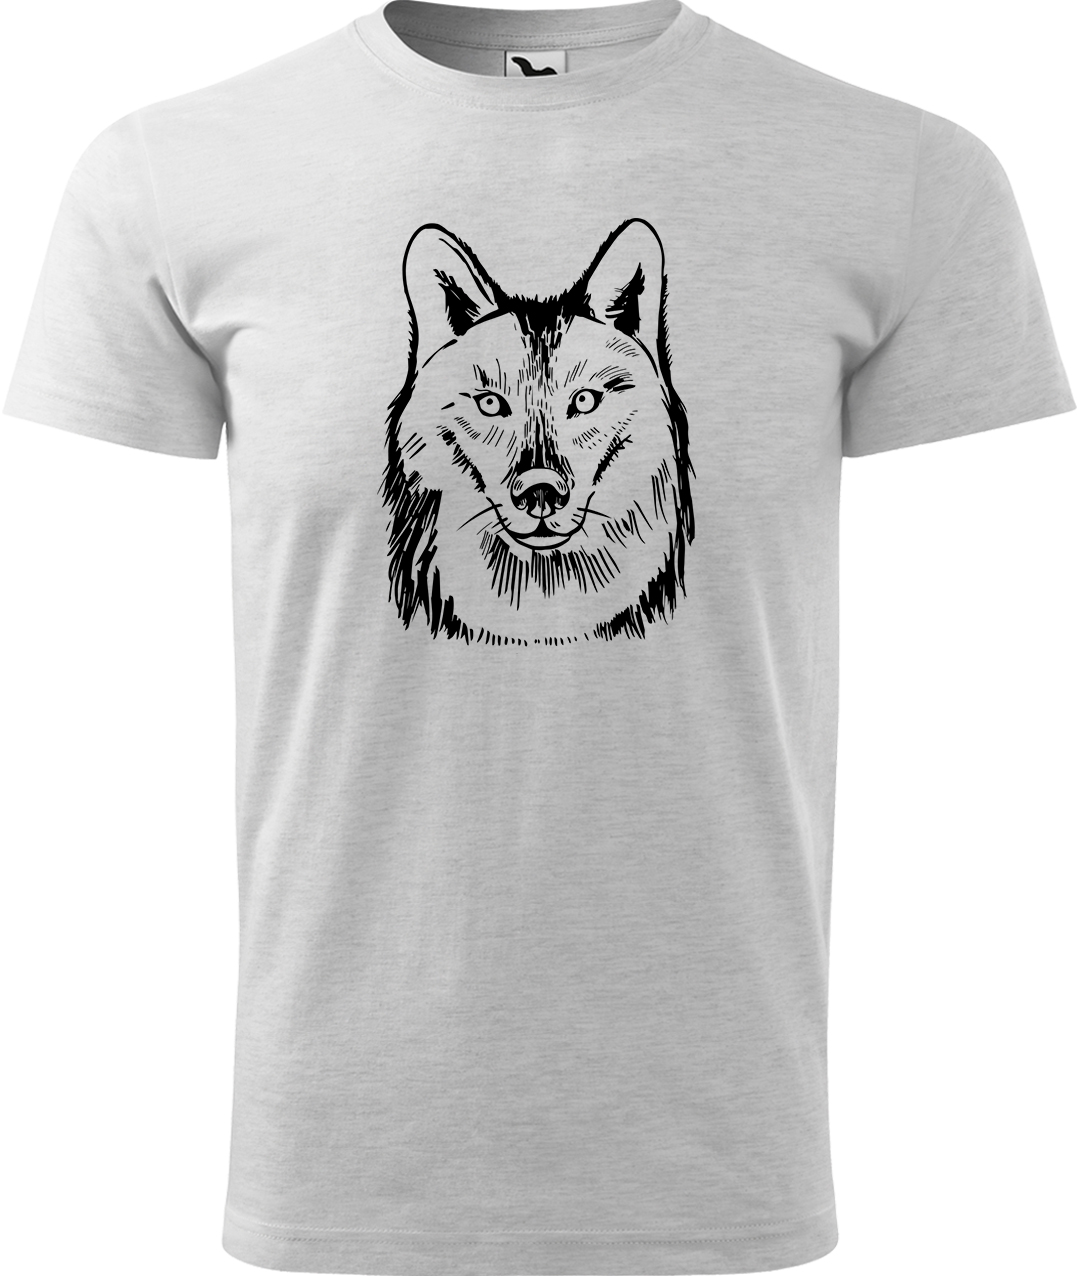 Pánské tričko s vlkem - Kresba vlka Velikost: L, Barva: Světle šedý melír (03), Střih: pánský